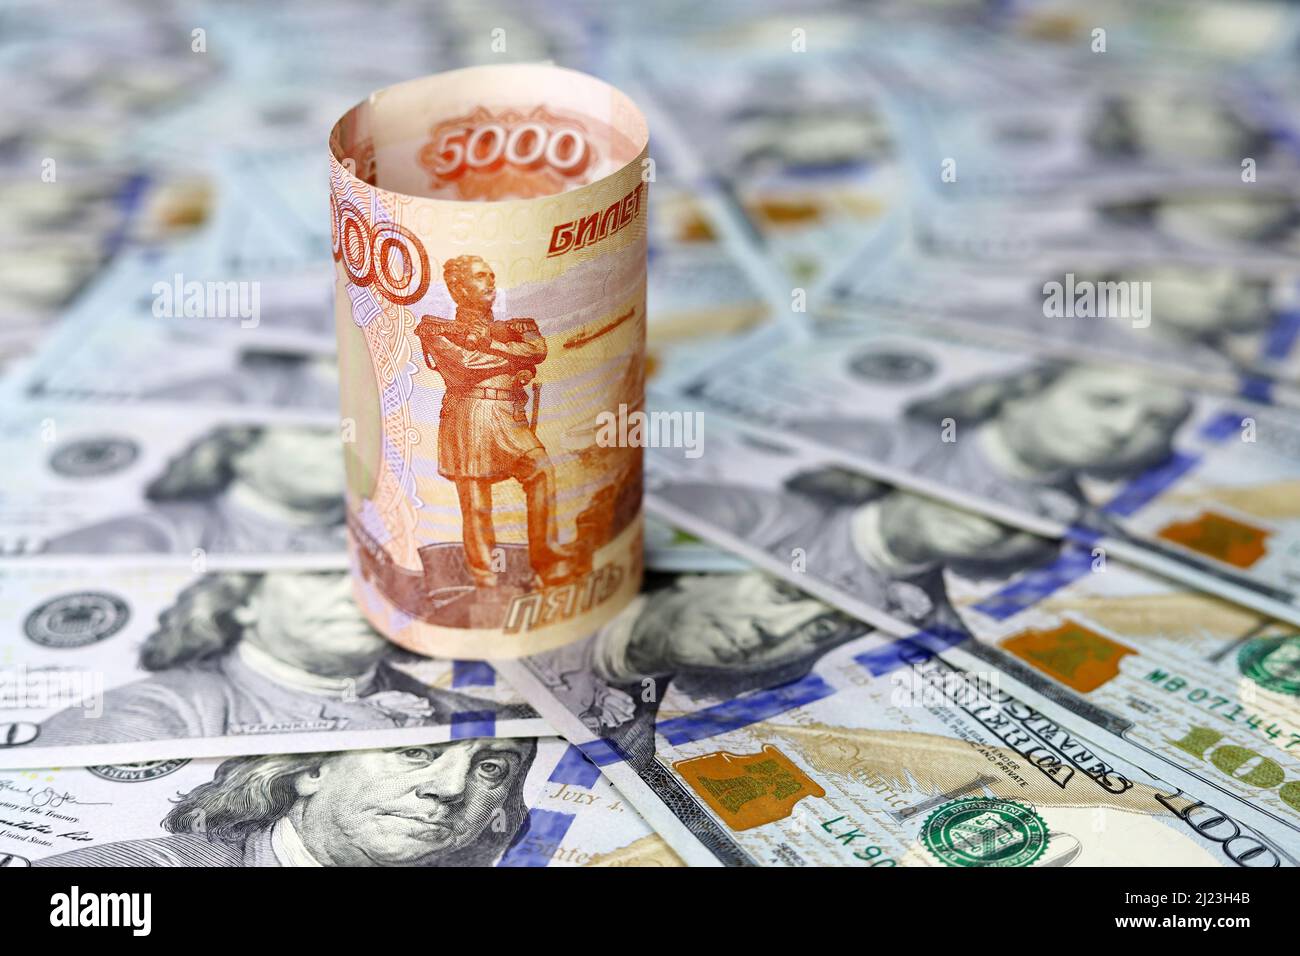 Billets de banque en roubles russes sur fond de dollars américains. Concept de taux de change, sanctions américaines contre la Russie Banque D'Images